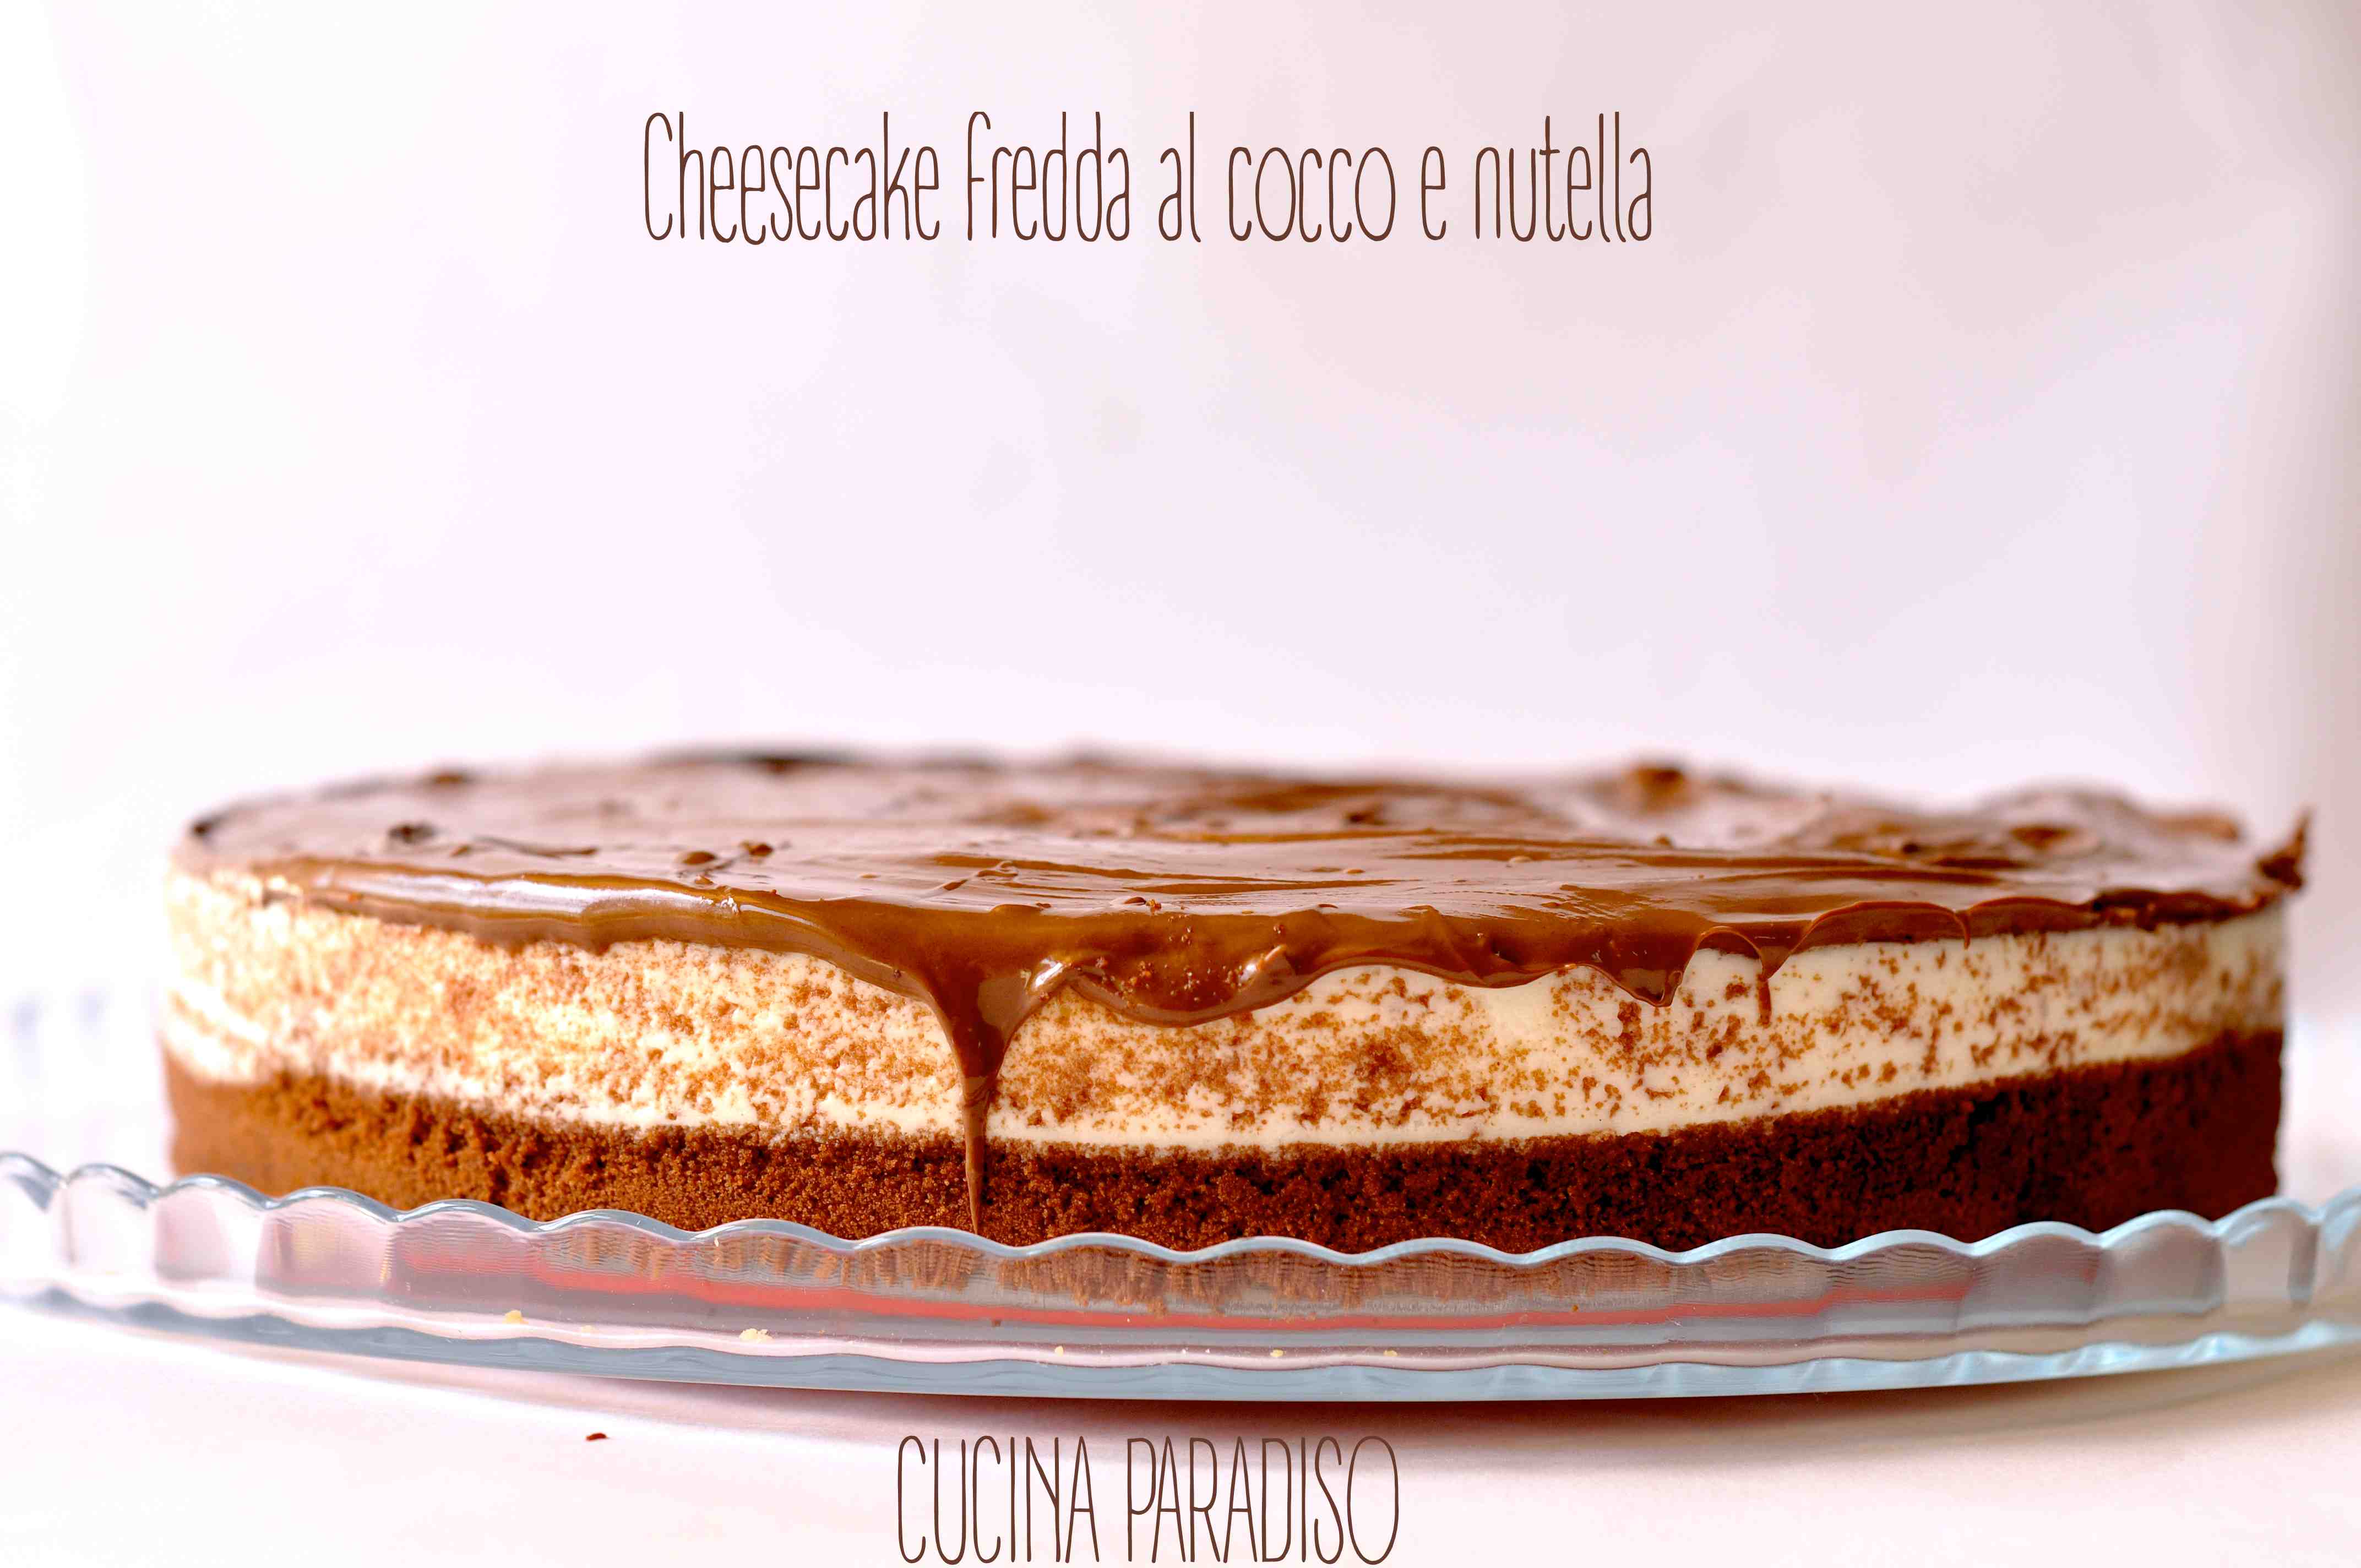 Cheesecake fredda cocco e nutella